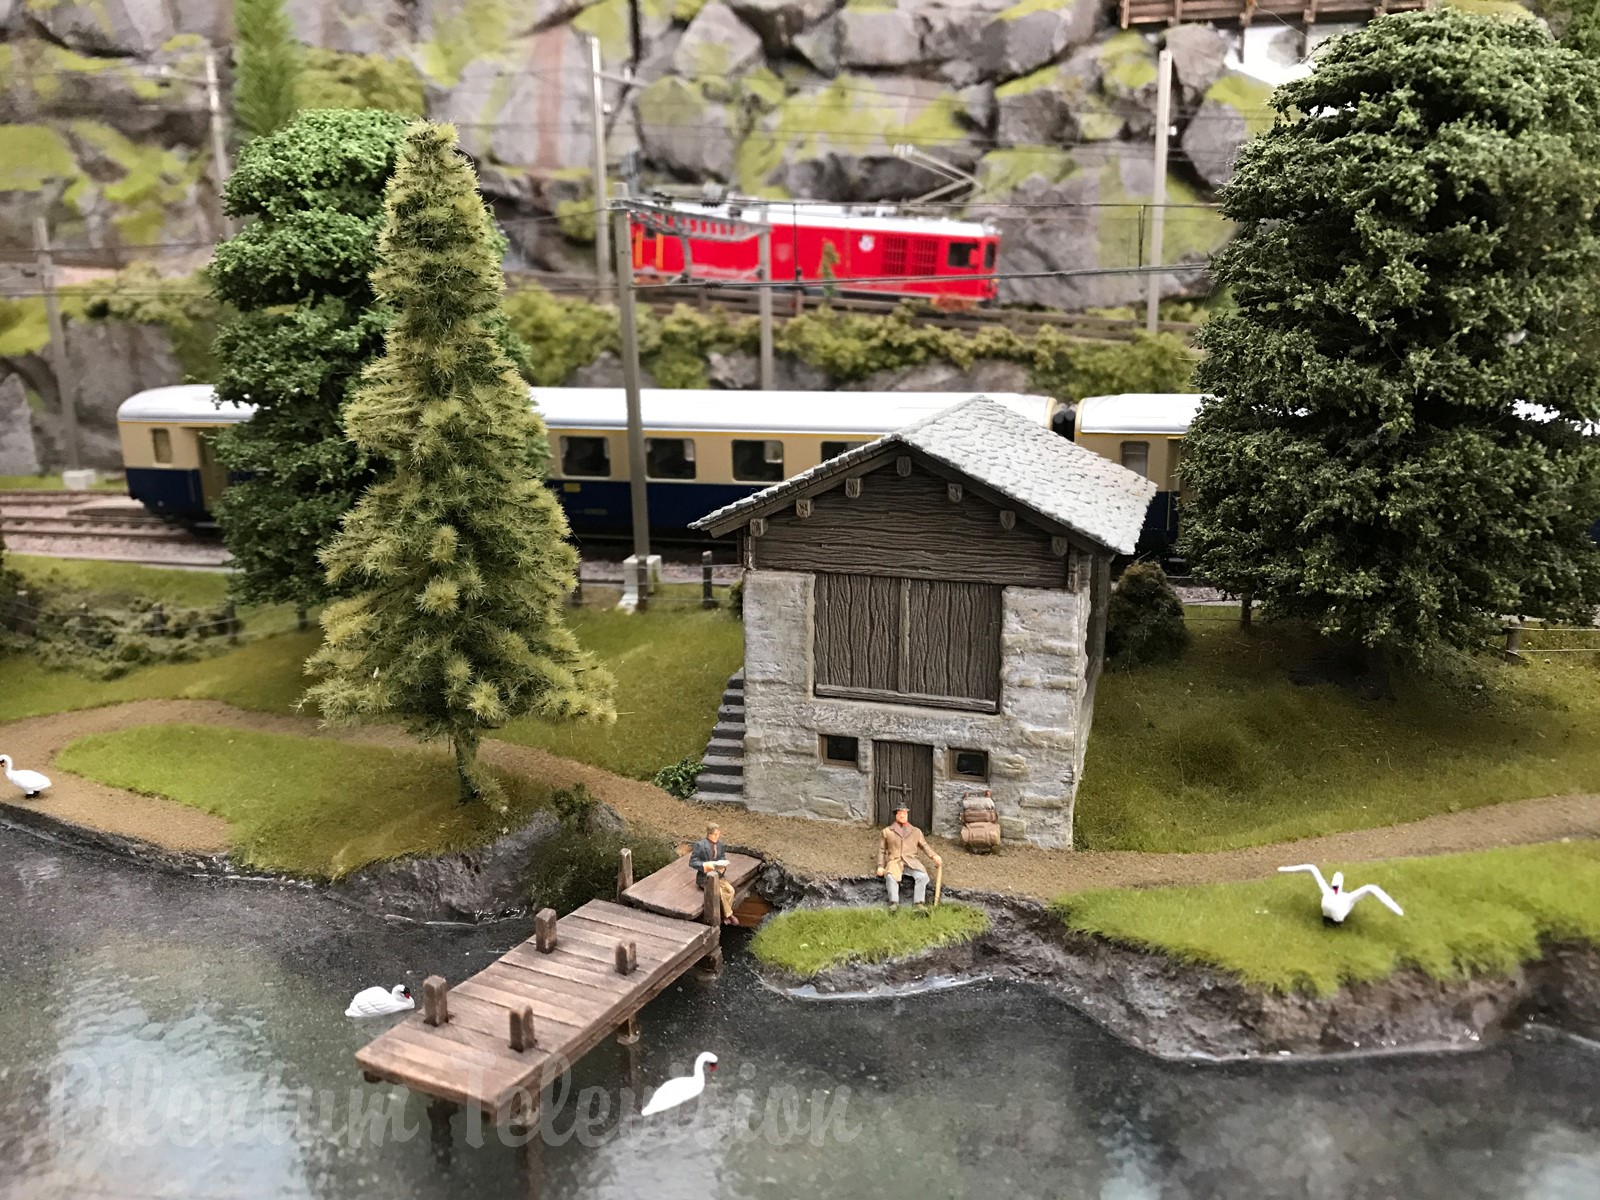 Trenini elettrici in scala HO in Svizzera: Il bellissimo plastico ferroviario svizzero di Brian Rodham